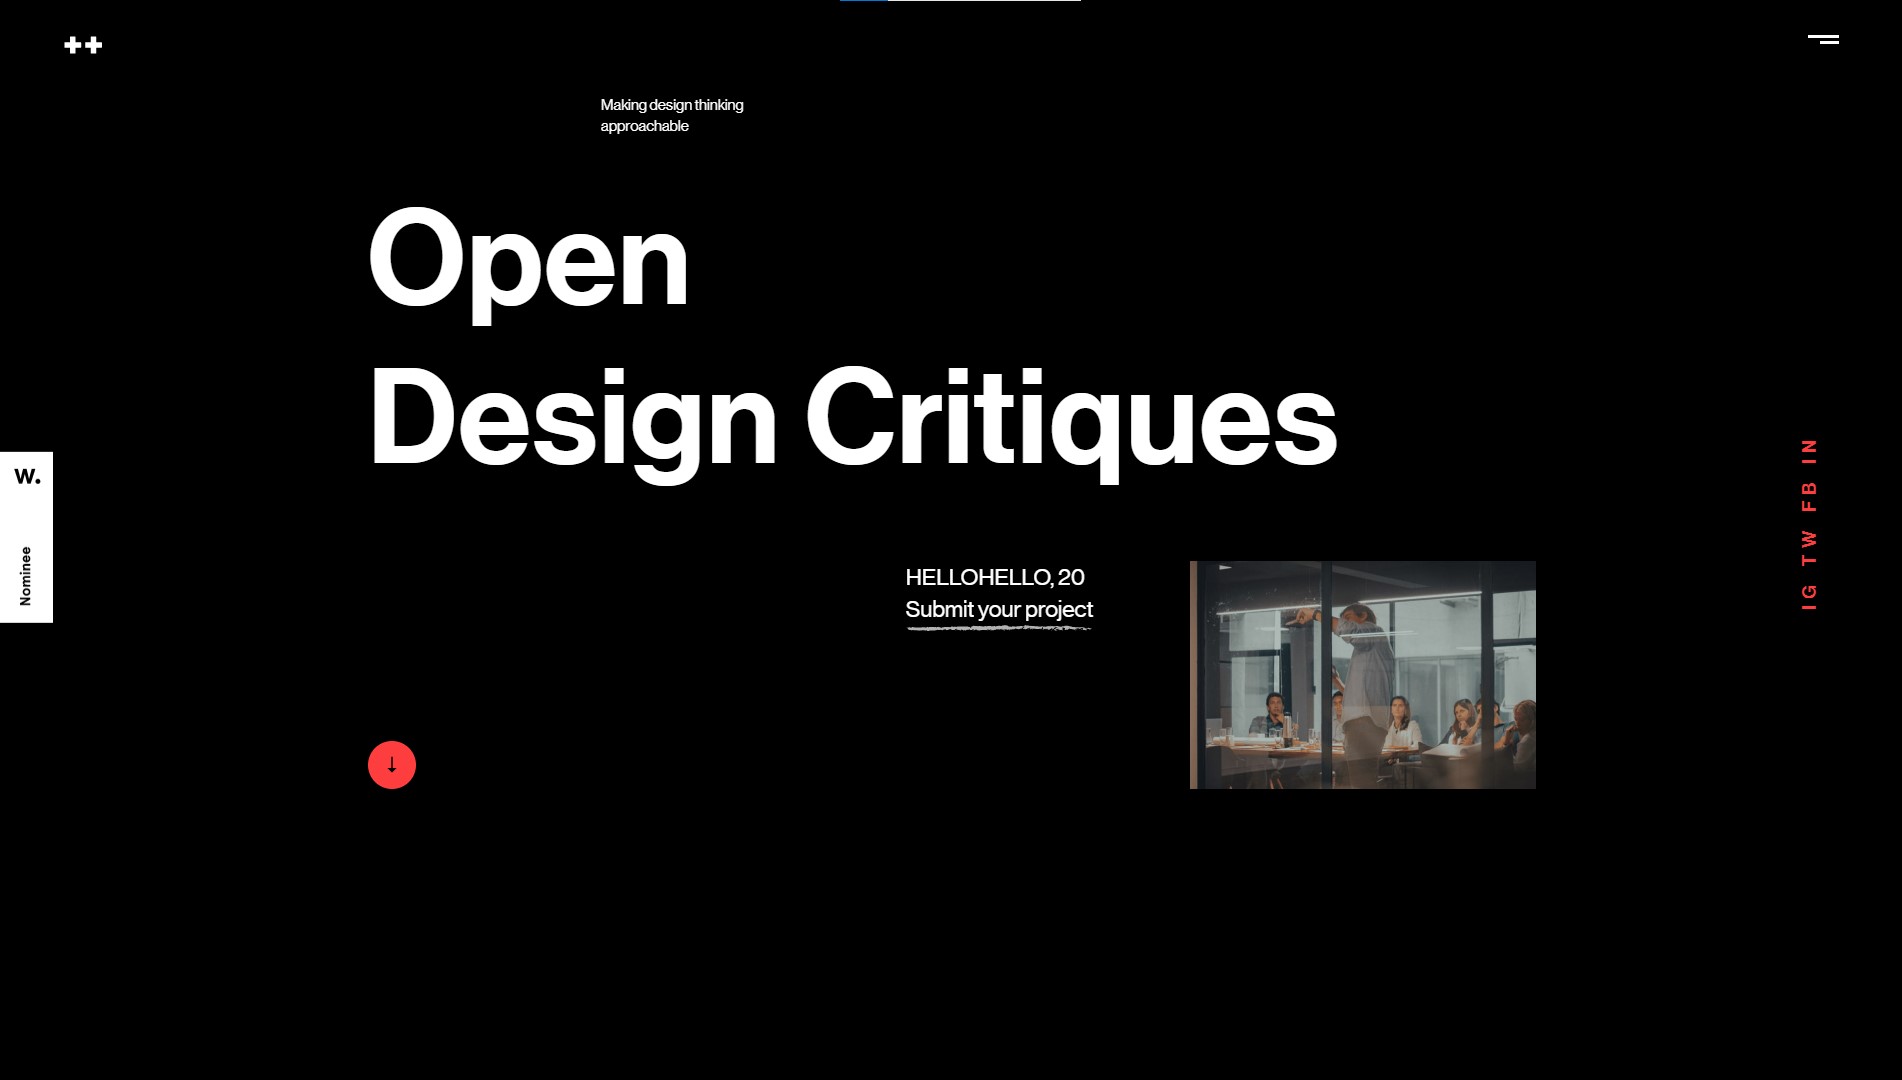 Open Design Critiques Culture & Education Clean